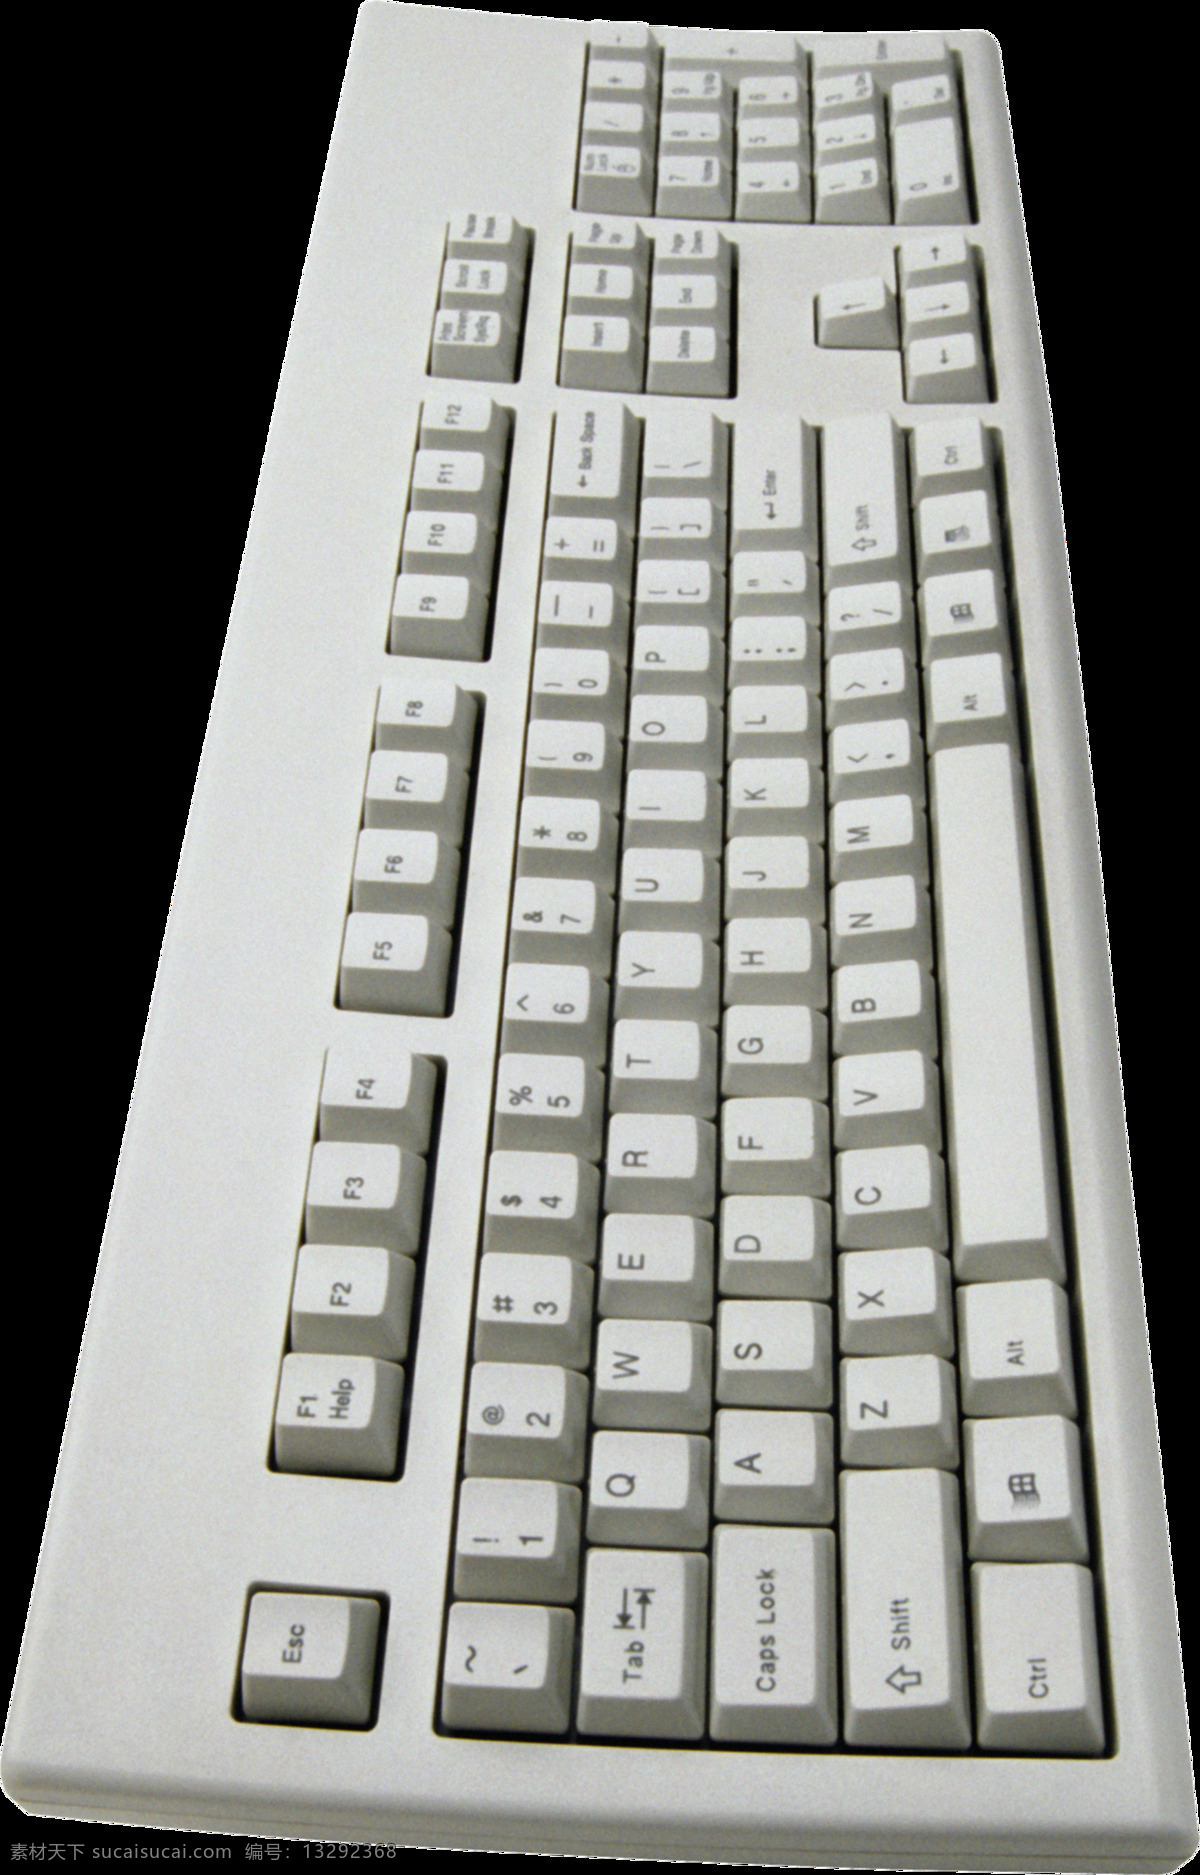 电脑 键盘 免 抠 透明 图 层 大图 清晰 电脑桌 矢量图 电脑键盘字母 电脑键盘按钮 电脑键盘布局 游戏键盘 时尚键盘 键盘图片